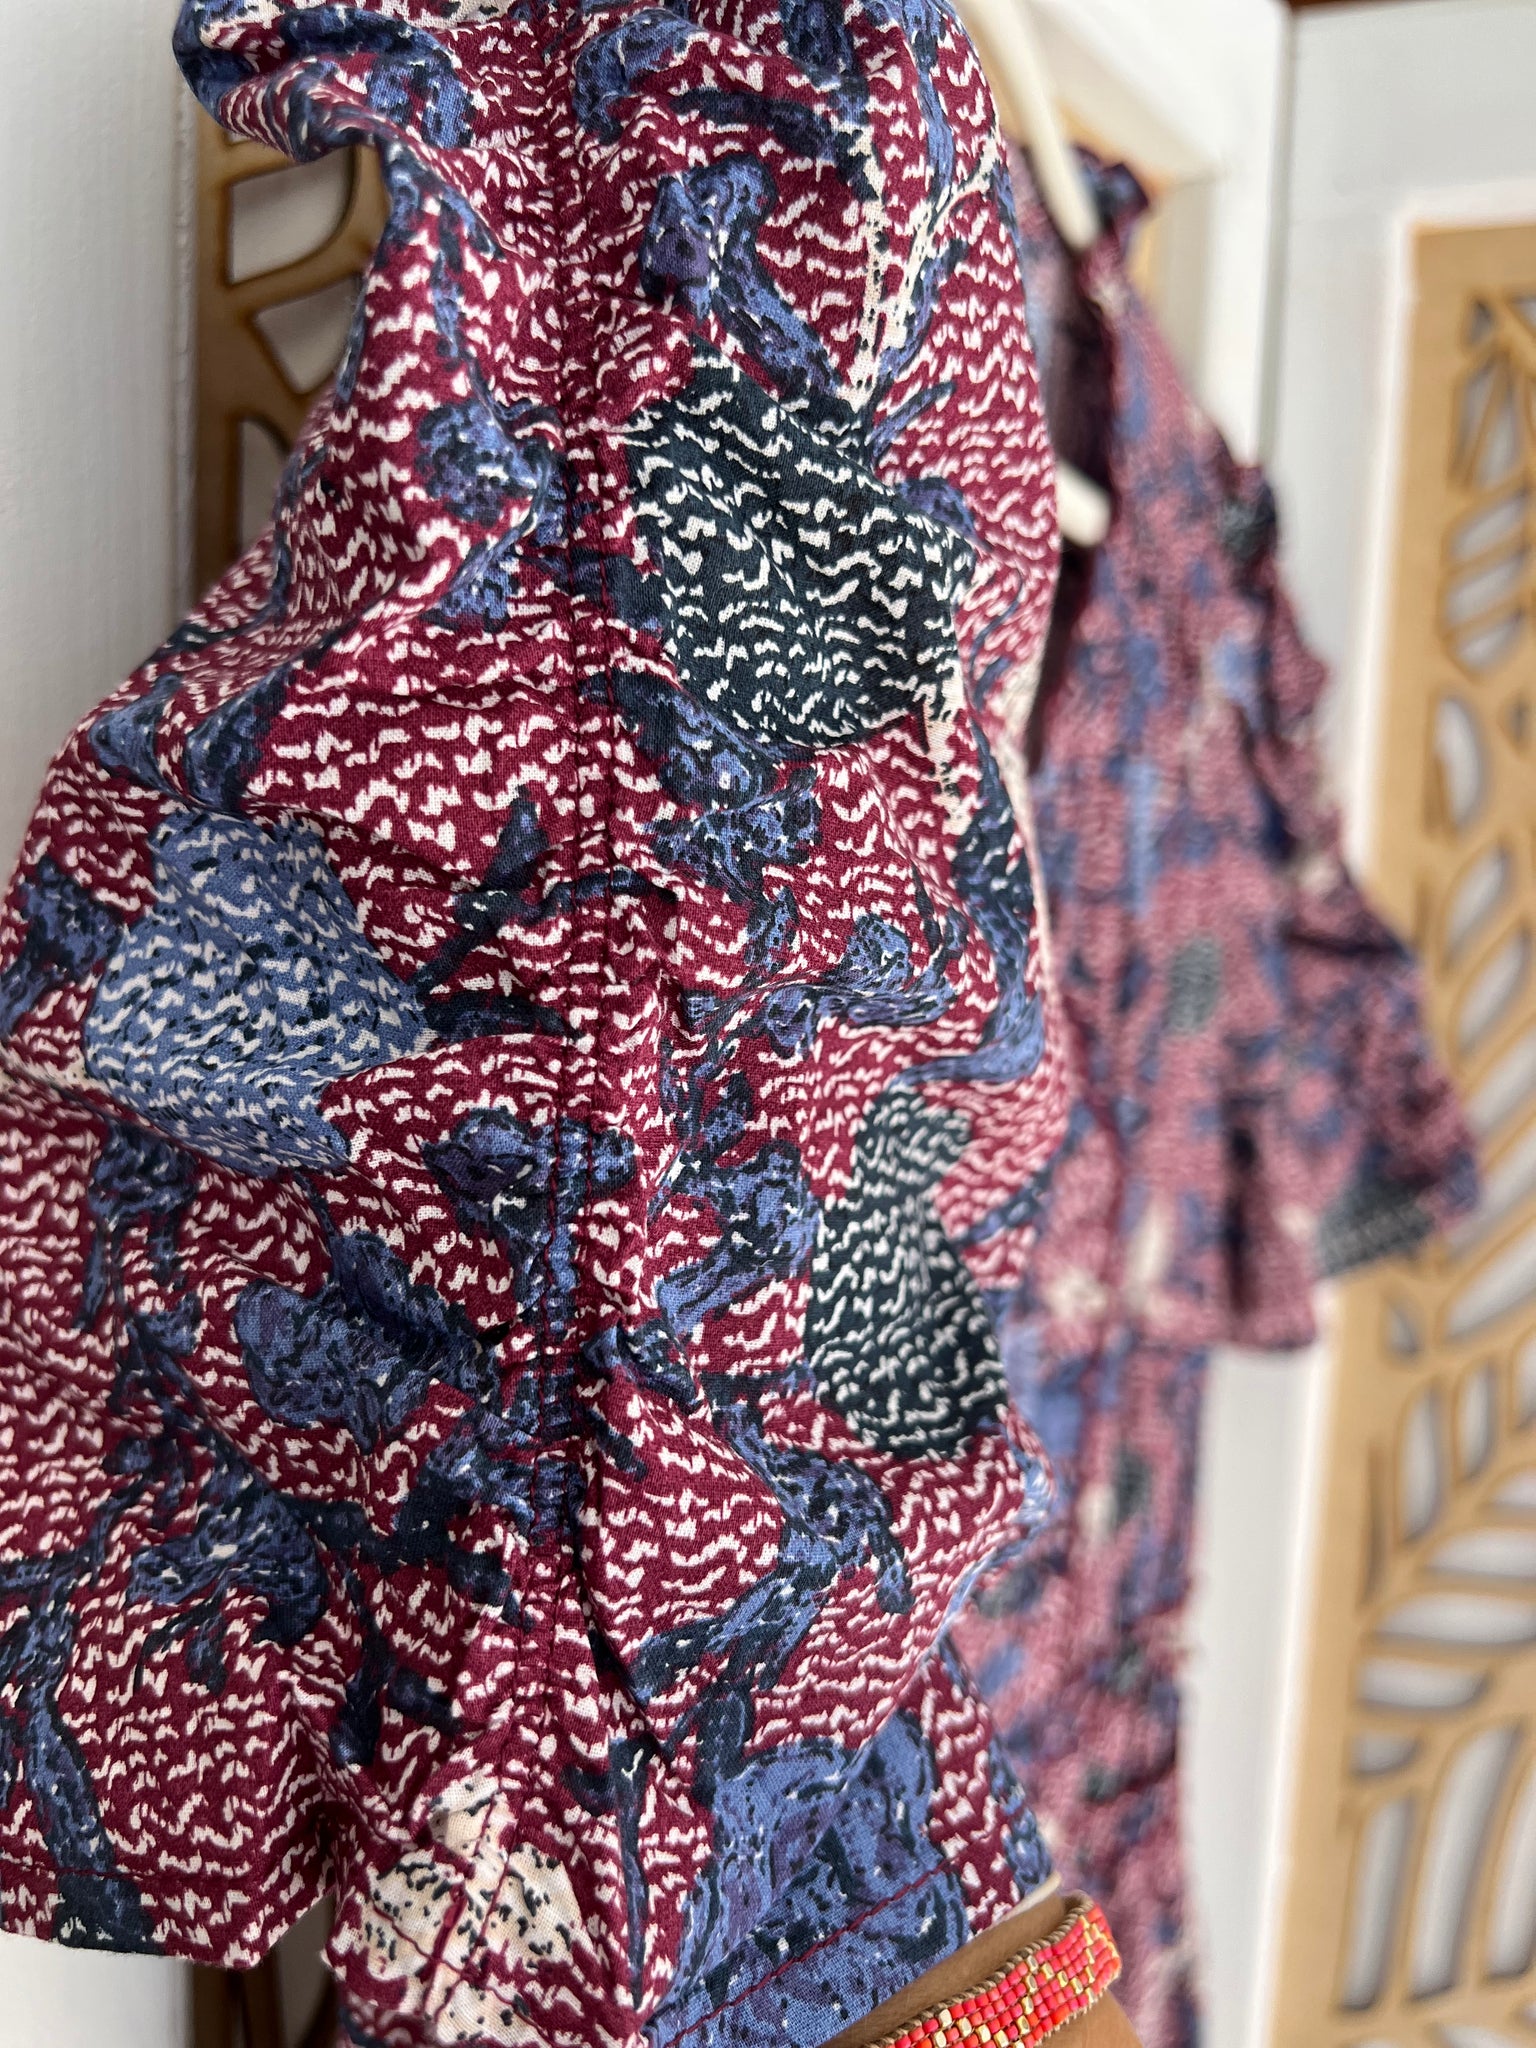 Saint Tropez Olea Dress ~ Tawny Port – Everyday Style Story